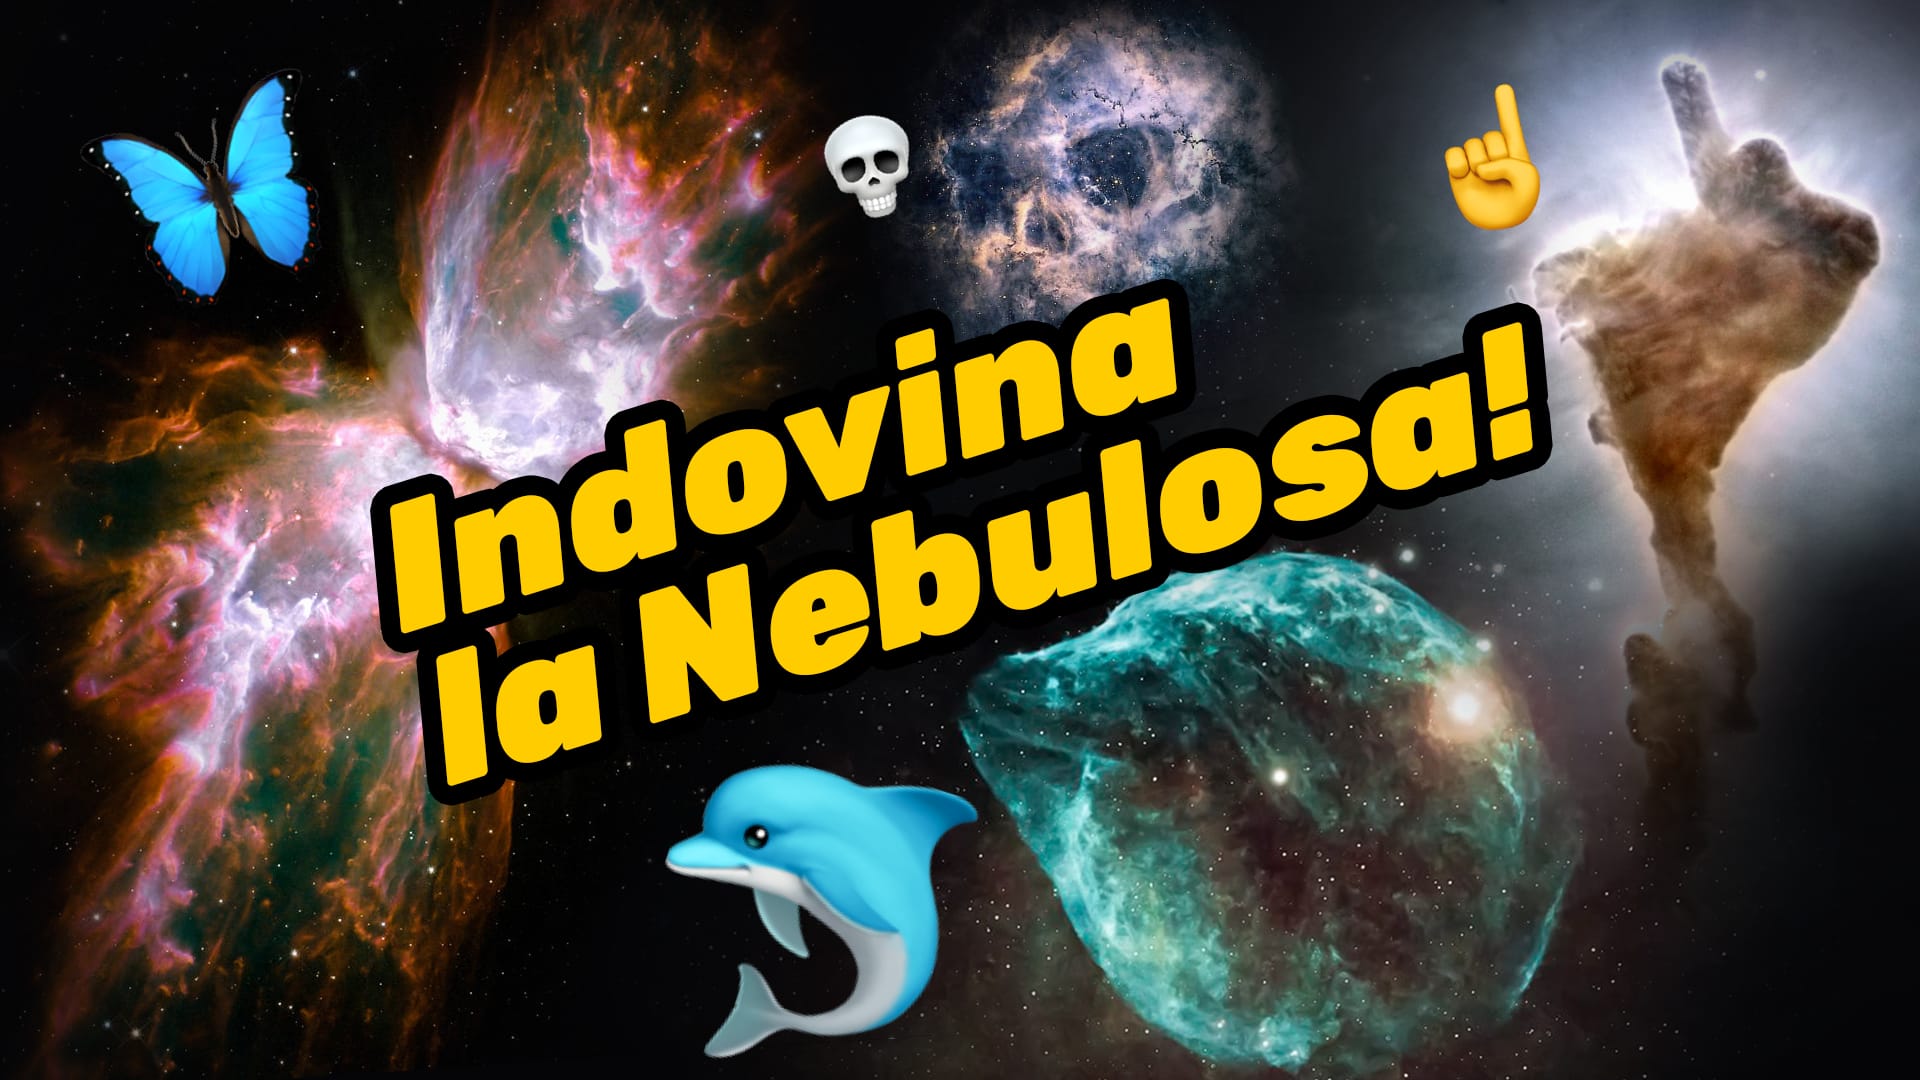 Guess the Nebula!